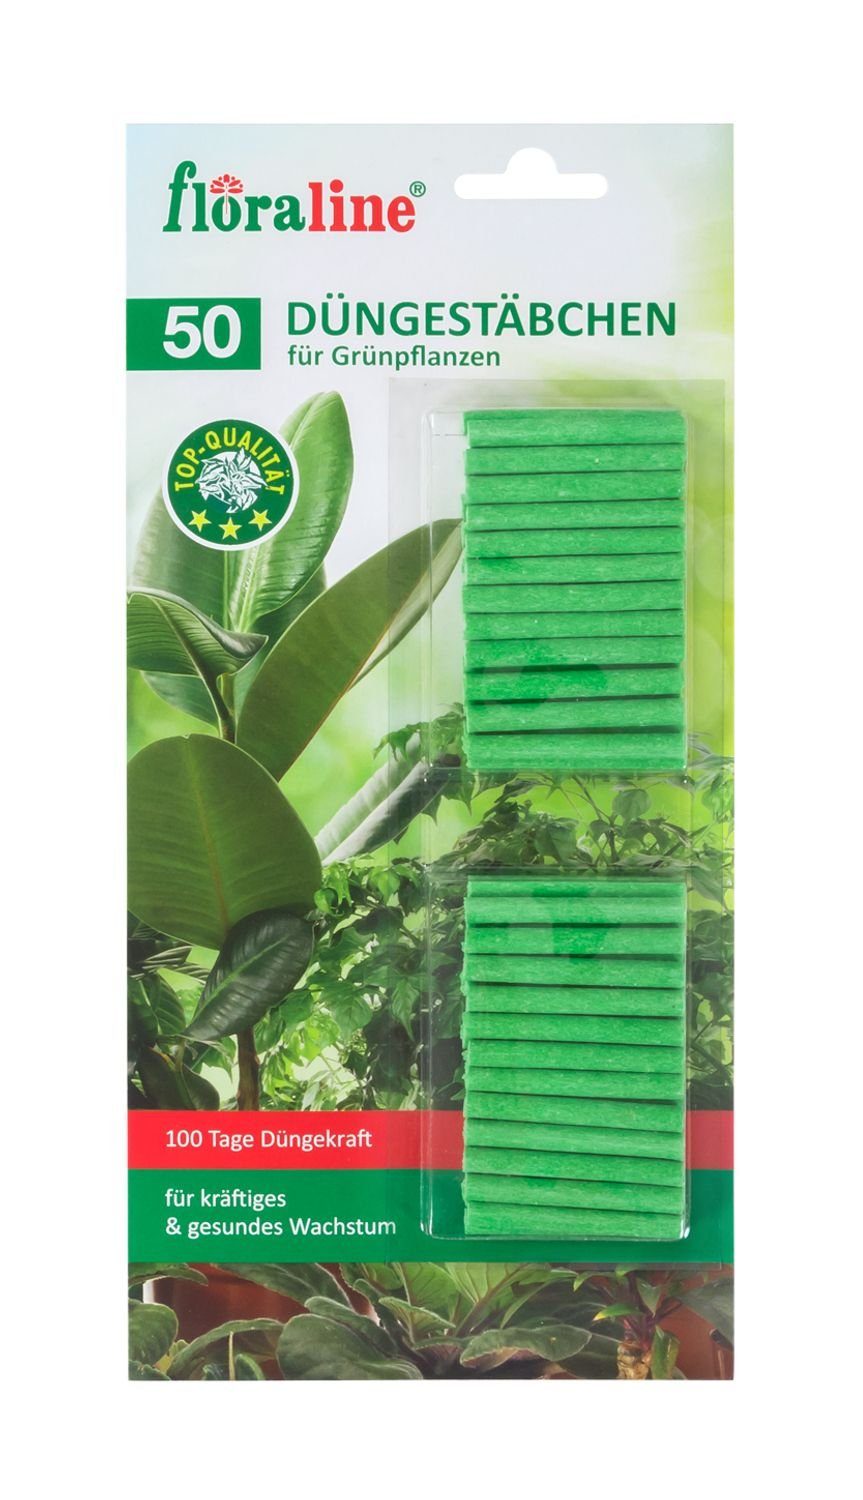 BURI Pflanzendünger 2x 50 Stück Floraline Düngerstäbchen für Grünpflanzen Pflanzendünger